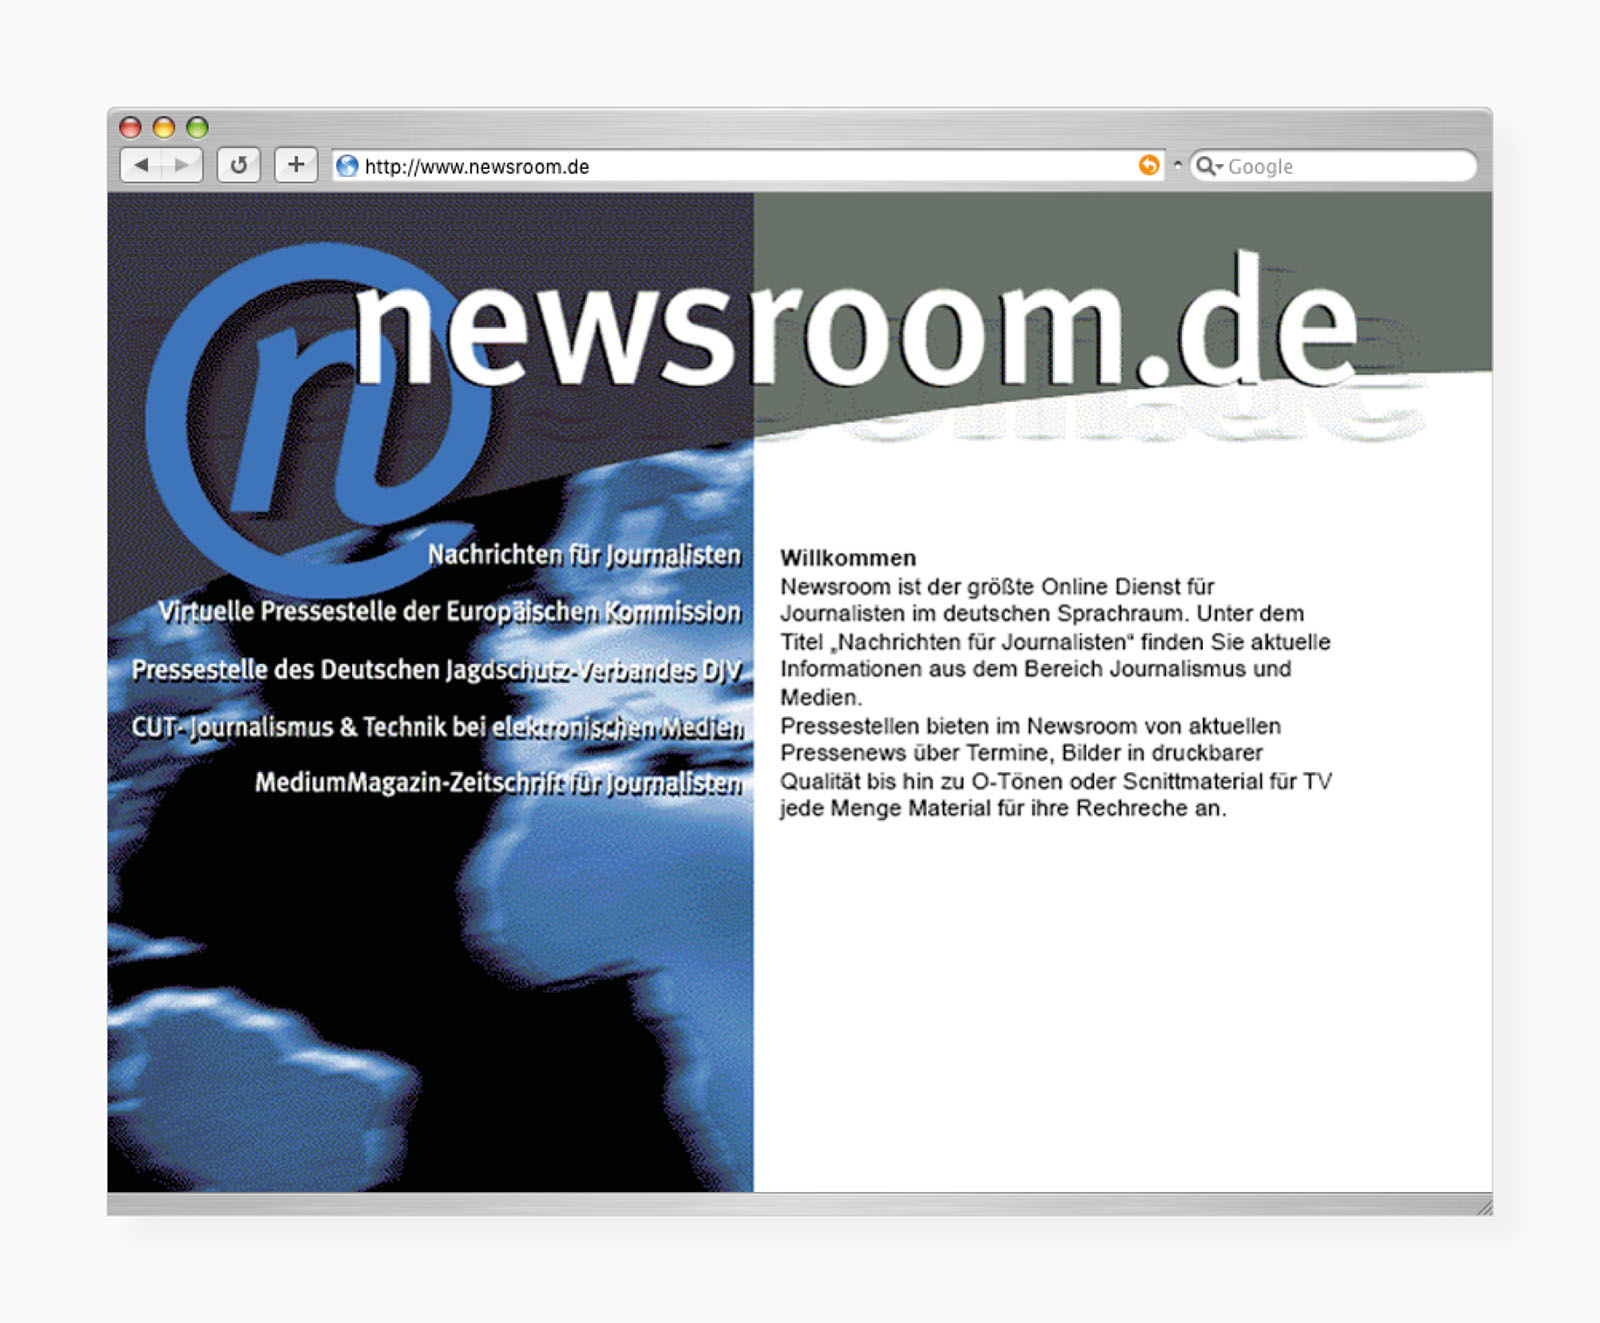 Startseite des Portals für Journalisten "Newsroom.de"